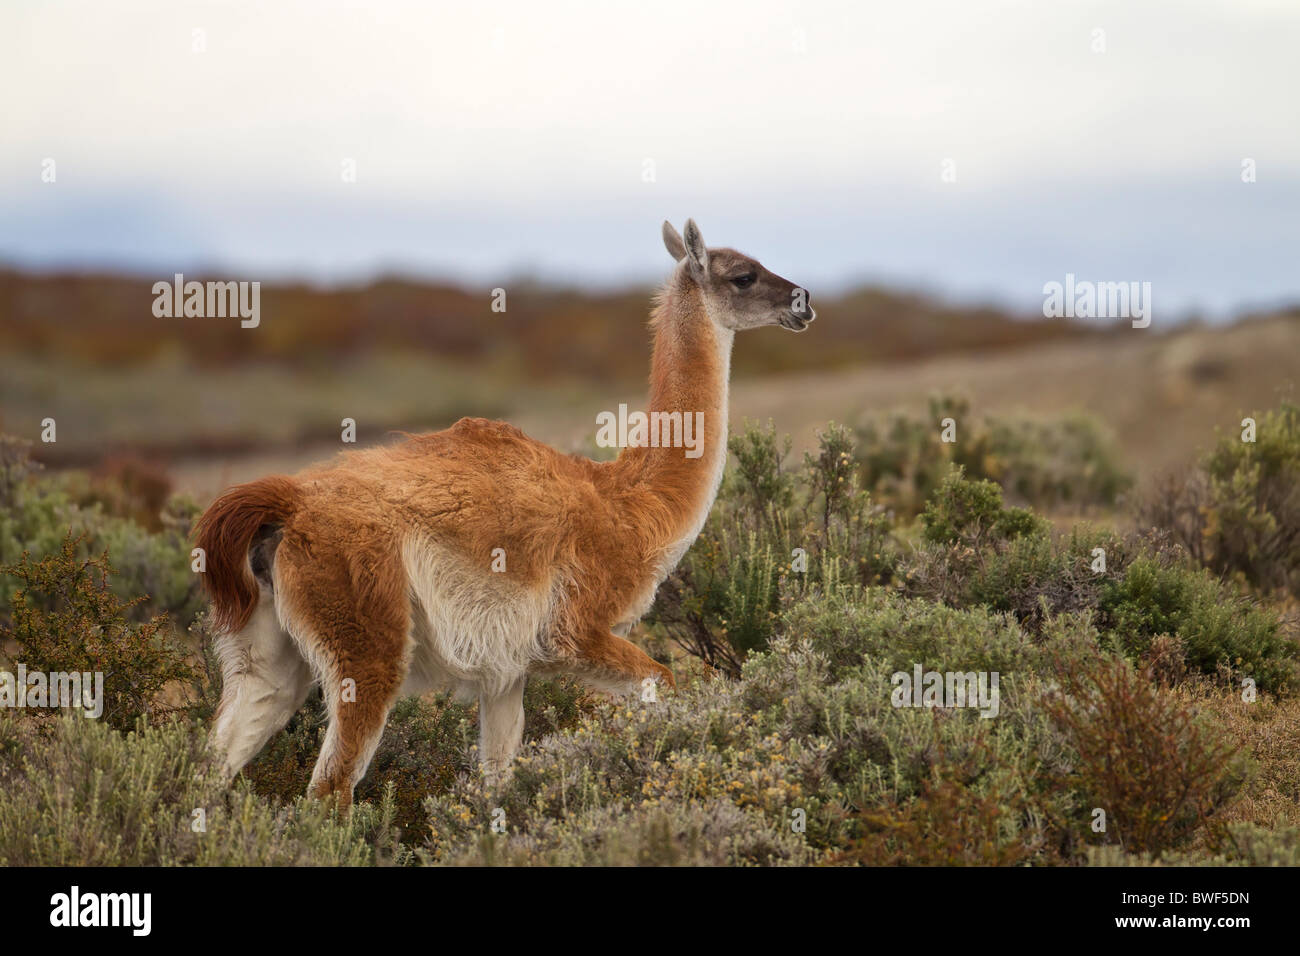 Guanco (Lama guanicoe) - Chile Stock Photo